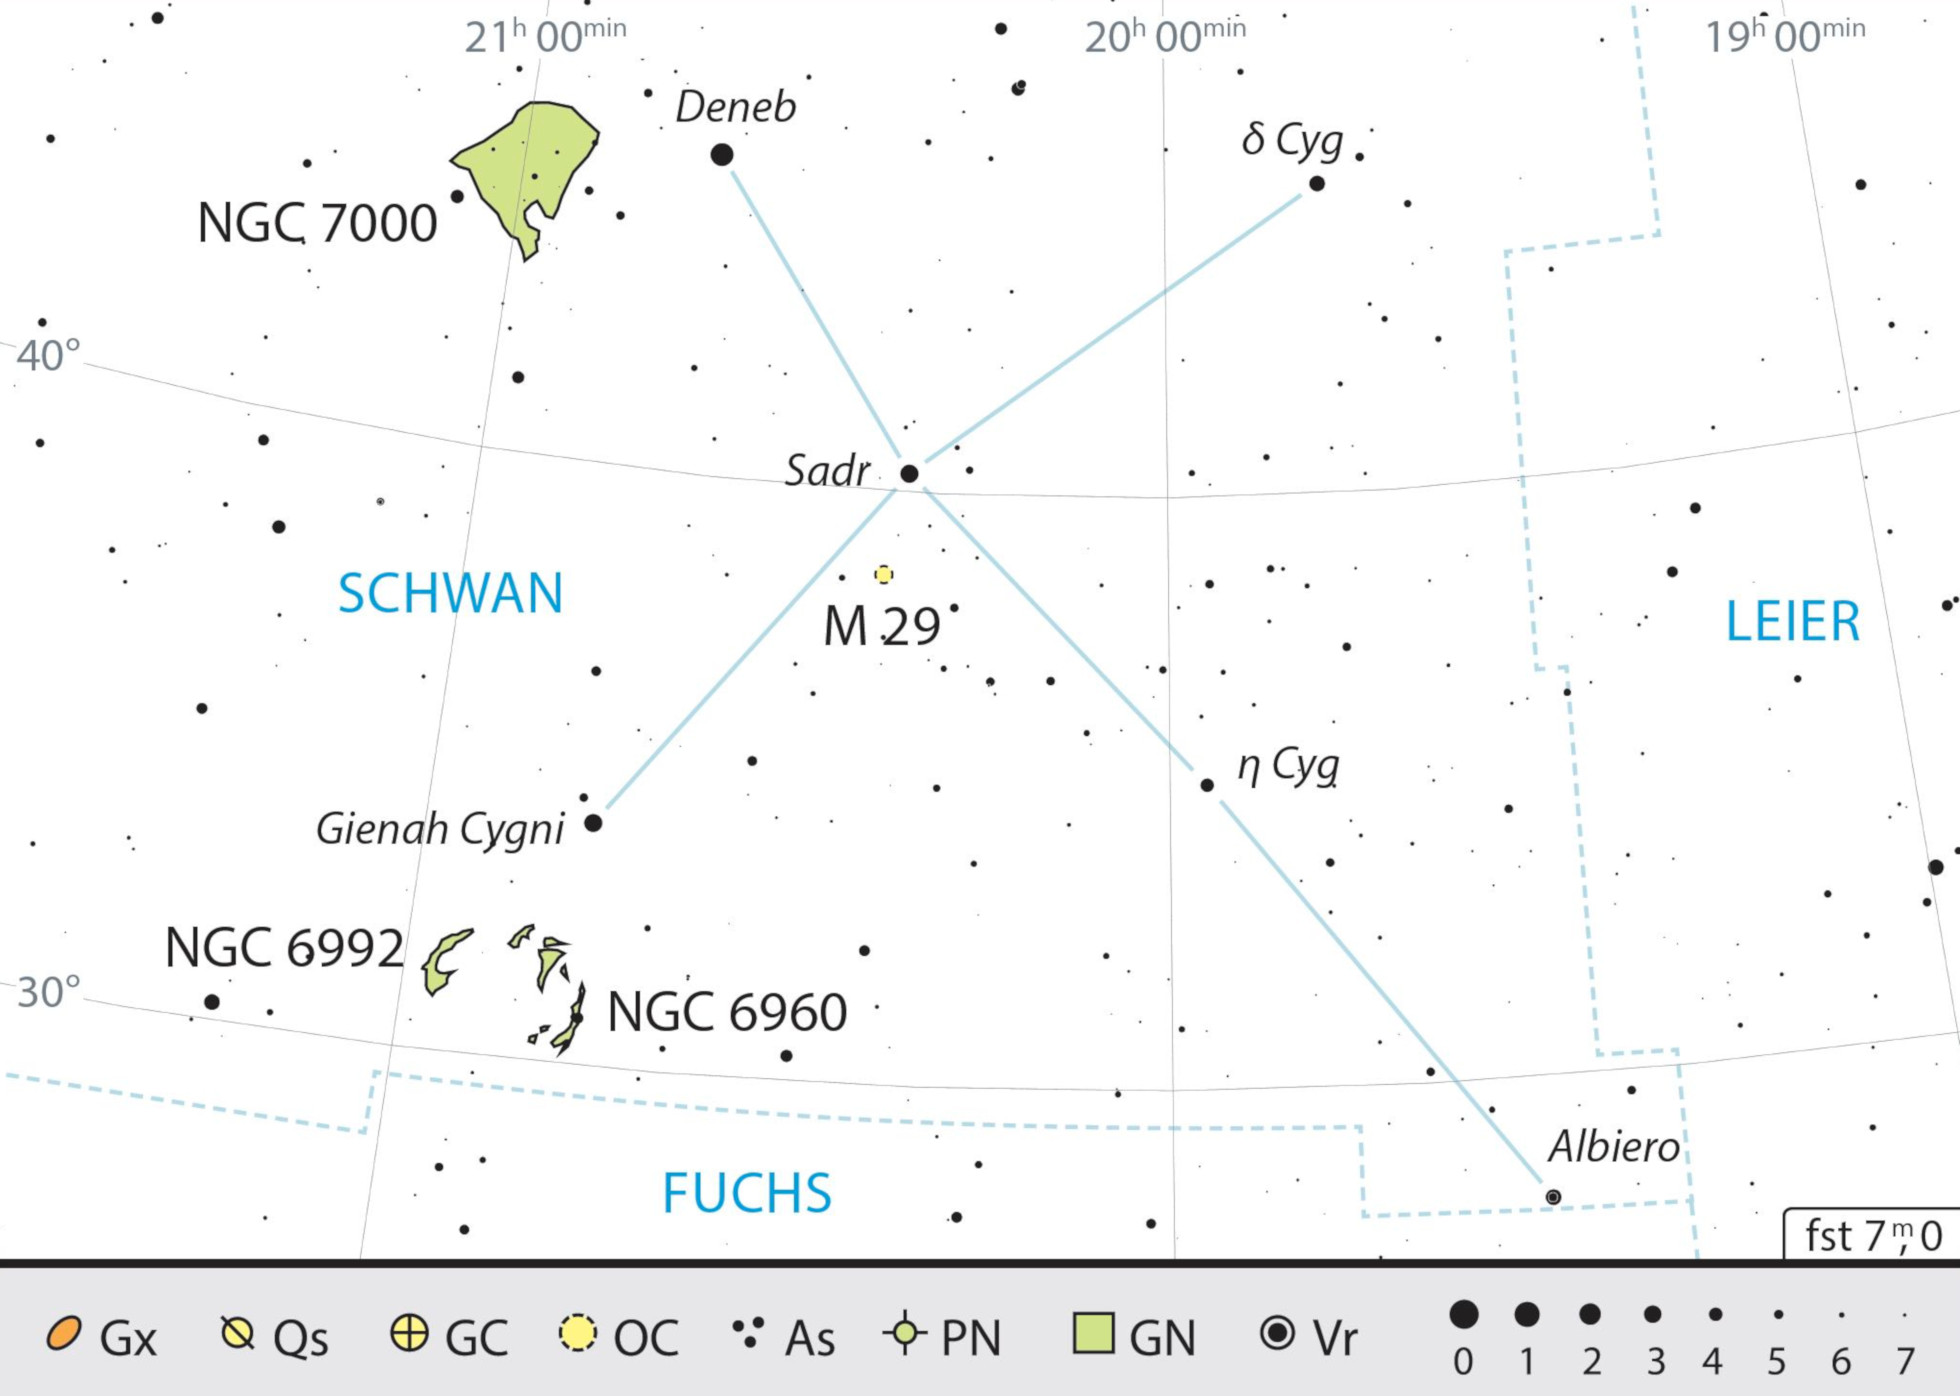 Mappa celeste per la costellazione del Cigno, con gli oggetti consigliati. J.Scholten